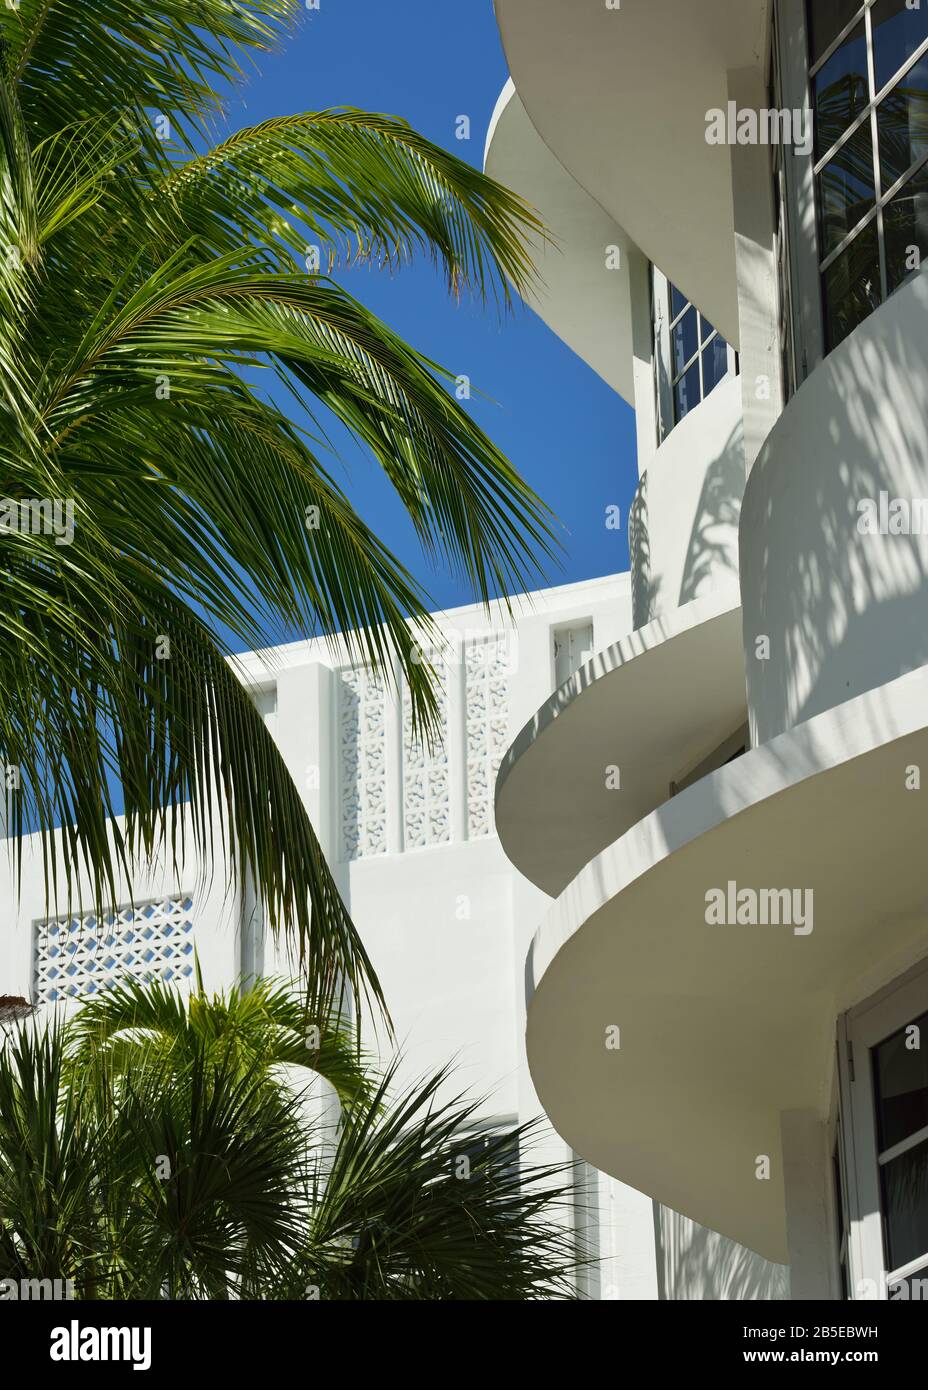 Dettaglio architettonico di lastre di cemento su edifici art deco di South Beach, Miami, Florida. Motfivi d'onda, palme, vibe tropicali, arco 1930s Foto Stock